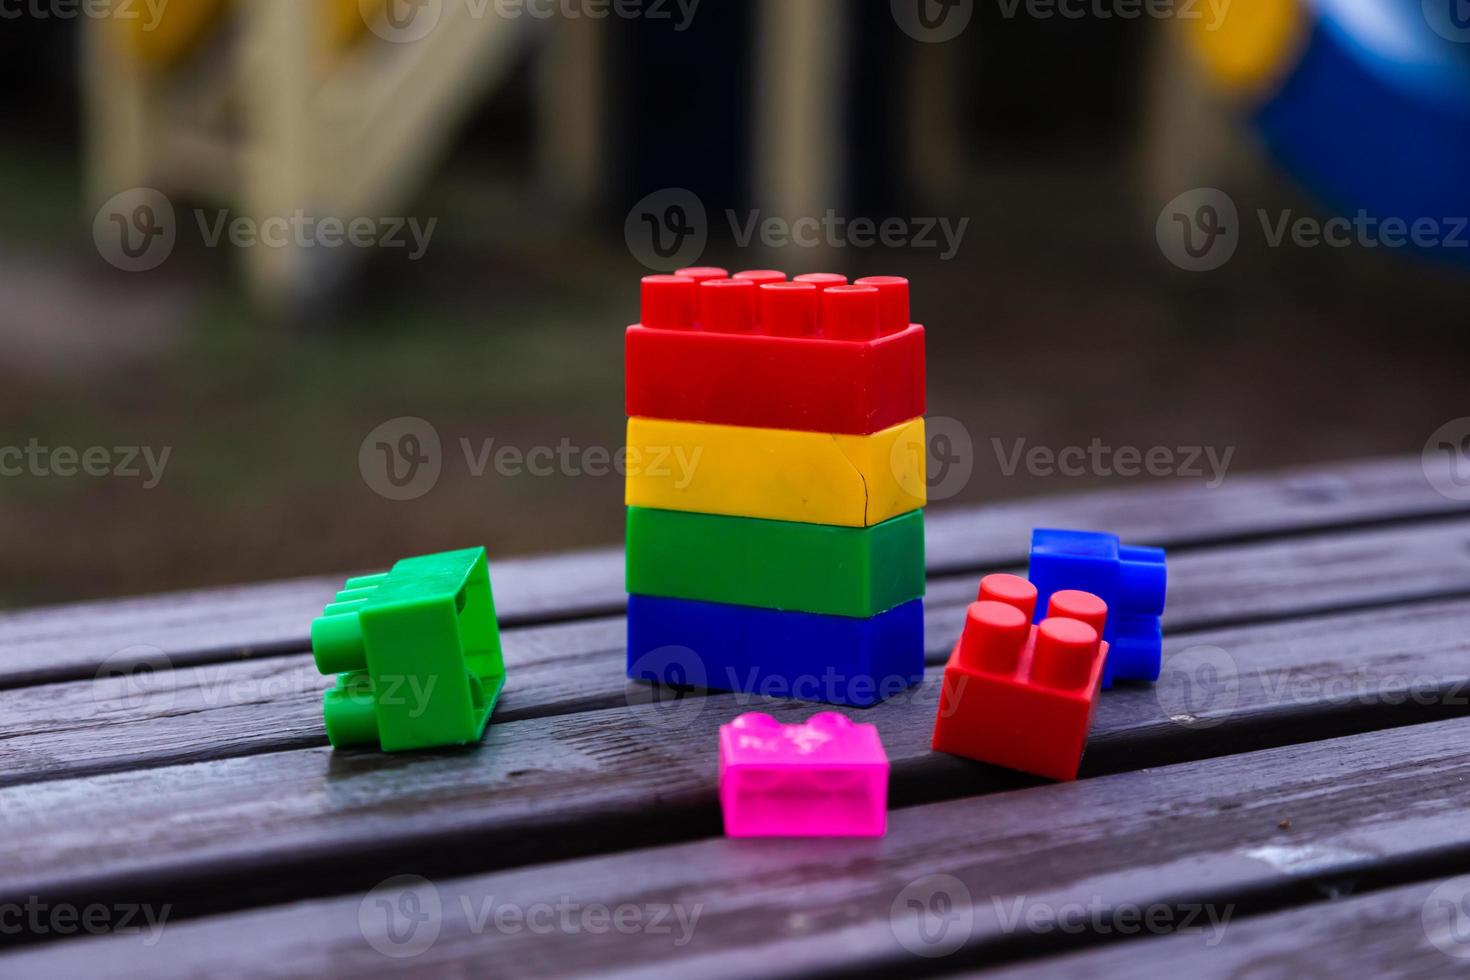 blocs de construction de jouets colorés photo